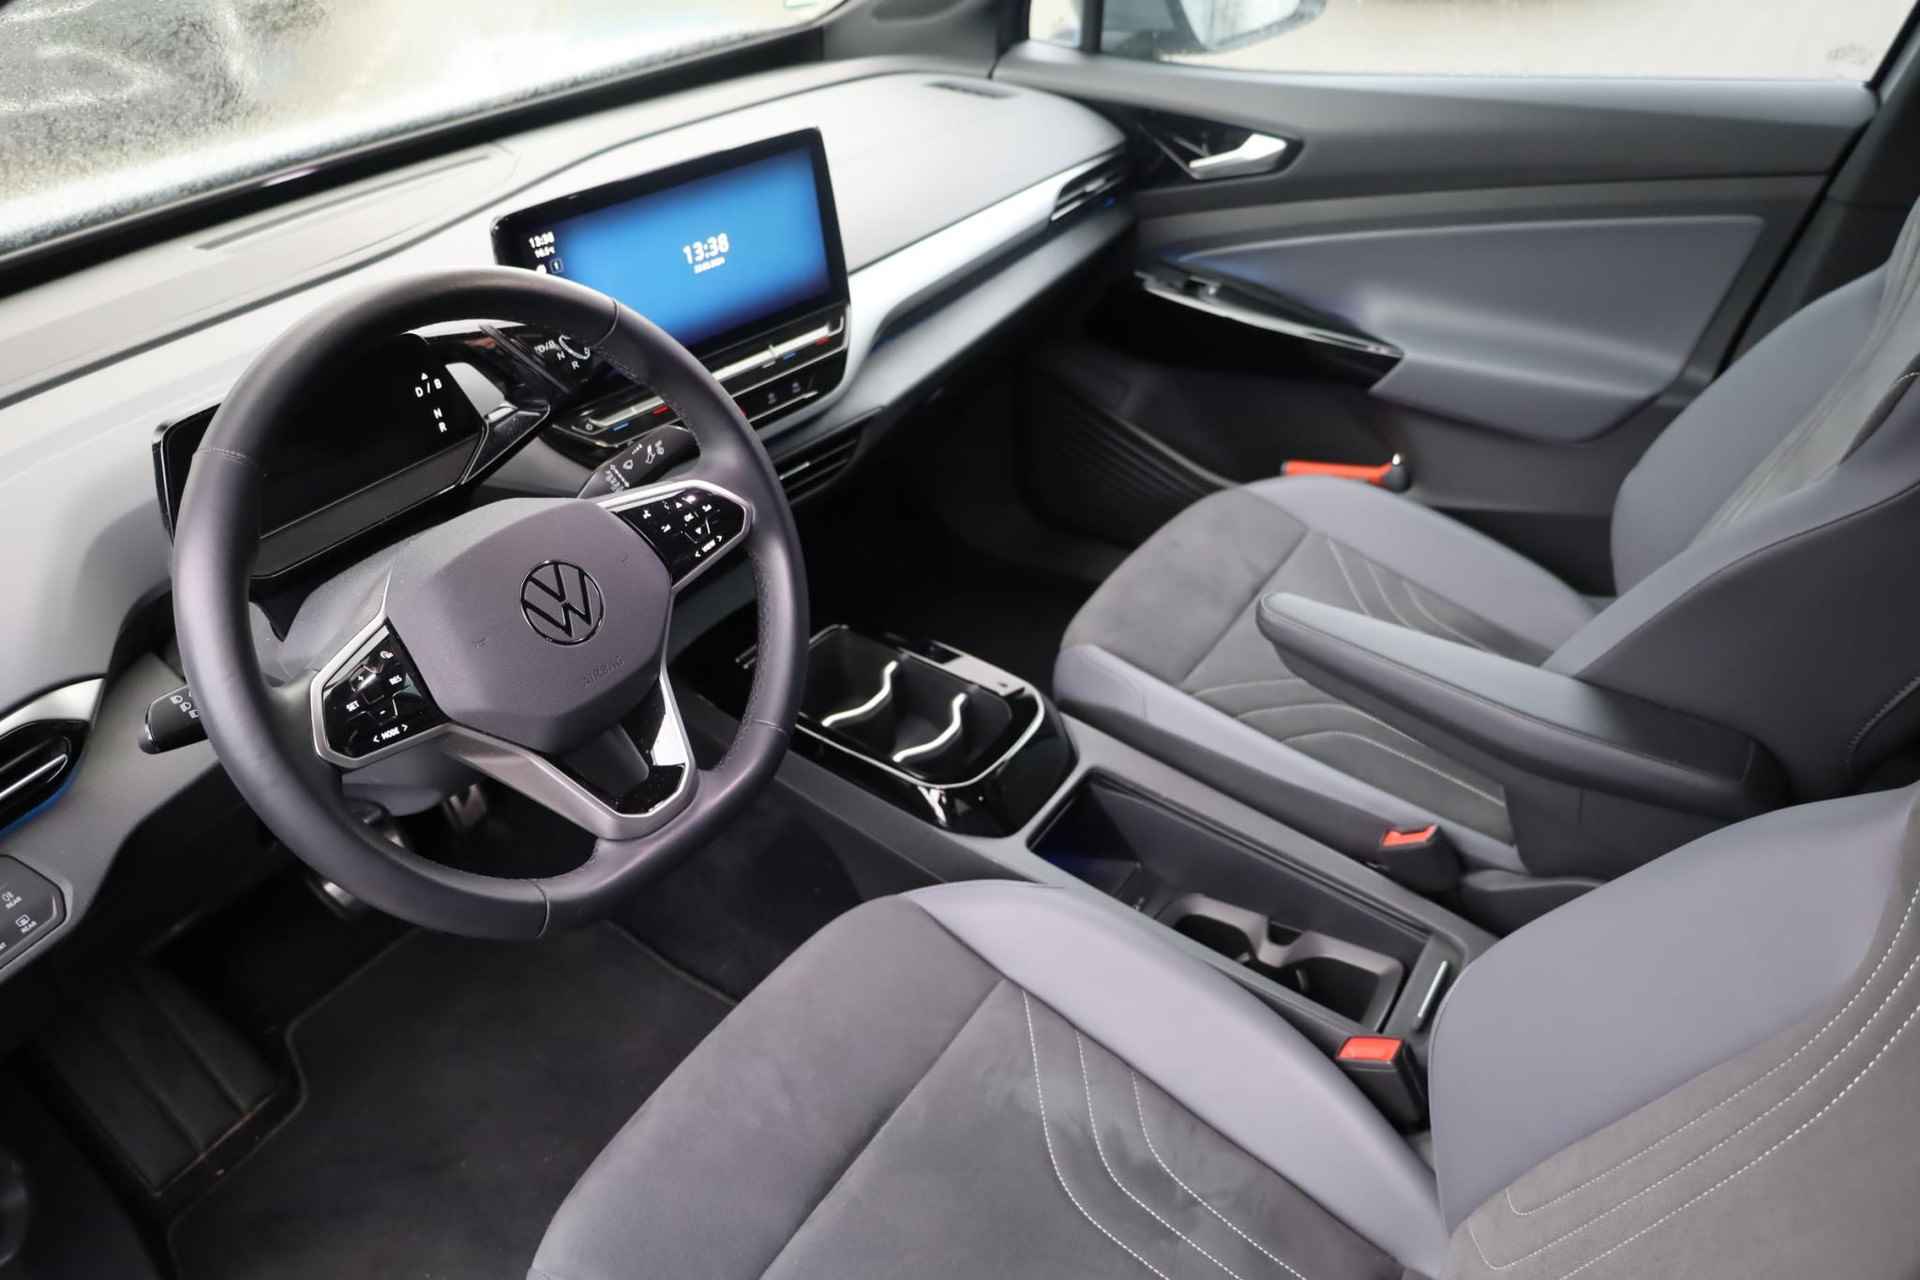 Volkswagen ID.5 Pro 77 kWh NL auto, nieuw door ons verkocht en geleverd, designpakket (led matrix privacy glas led strip tussen koplampen), comfort pakket (stoel en stuurwiel en voorruit verwarming), navigatie pakket, 20" drammen lmv, assitance pakket, keyless entry, achteruitrijcamera - 11/40